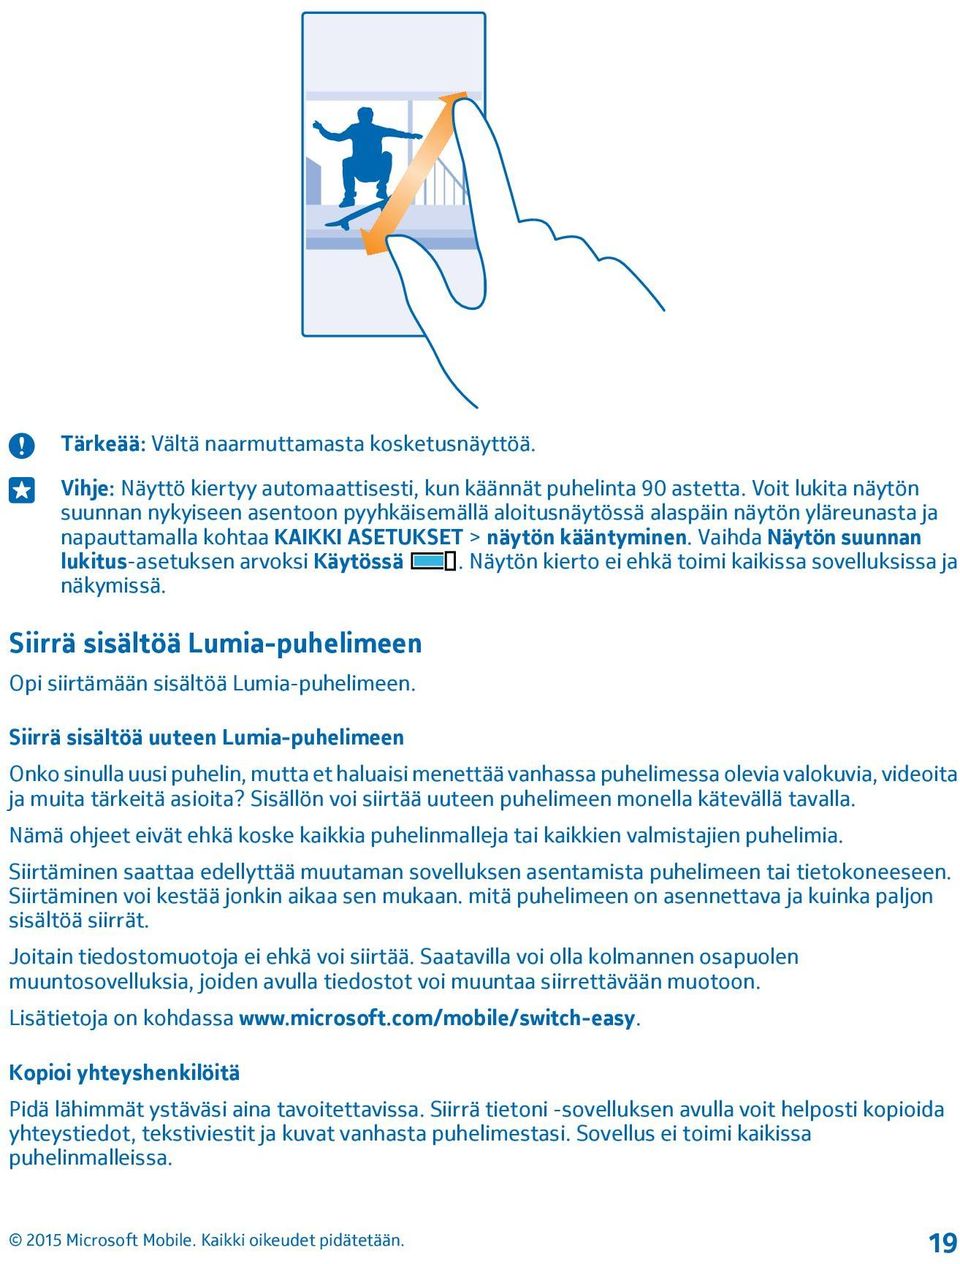 Vaihda Näytön suunnan lukitus-asetuksen arvoksi Käytössä. Näytön kierto ei ehkä toimi kaikissa sovelluksissa ja näkymissä. Siirrä sisältöä Lumia-puhelimeen Opi siirtämään sisältöä Lumia-puhelimeen.